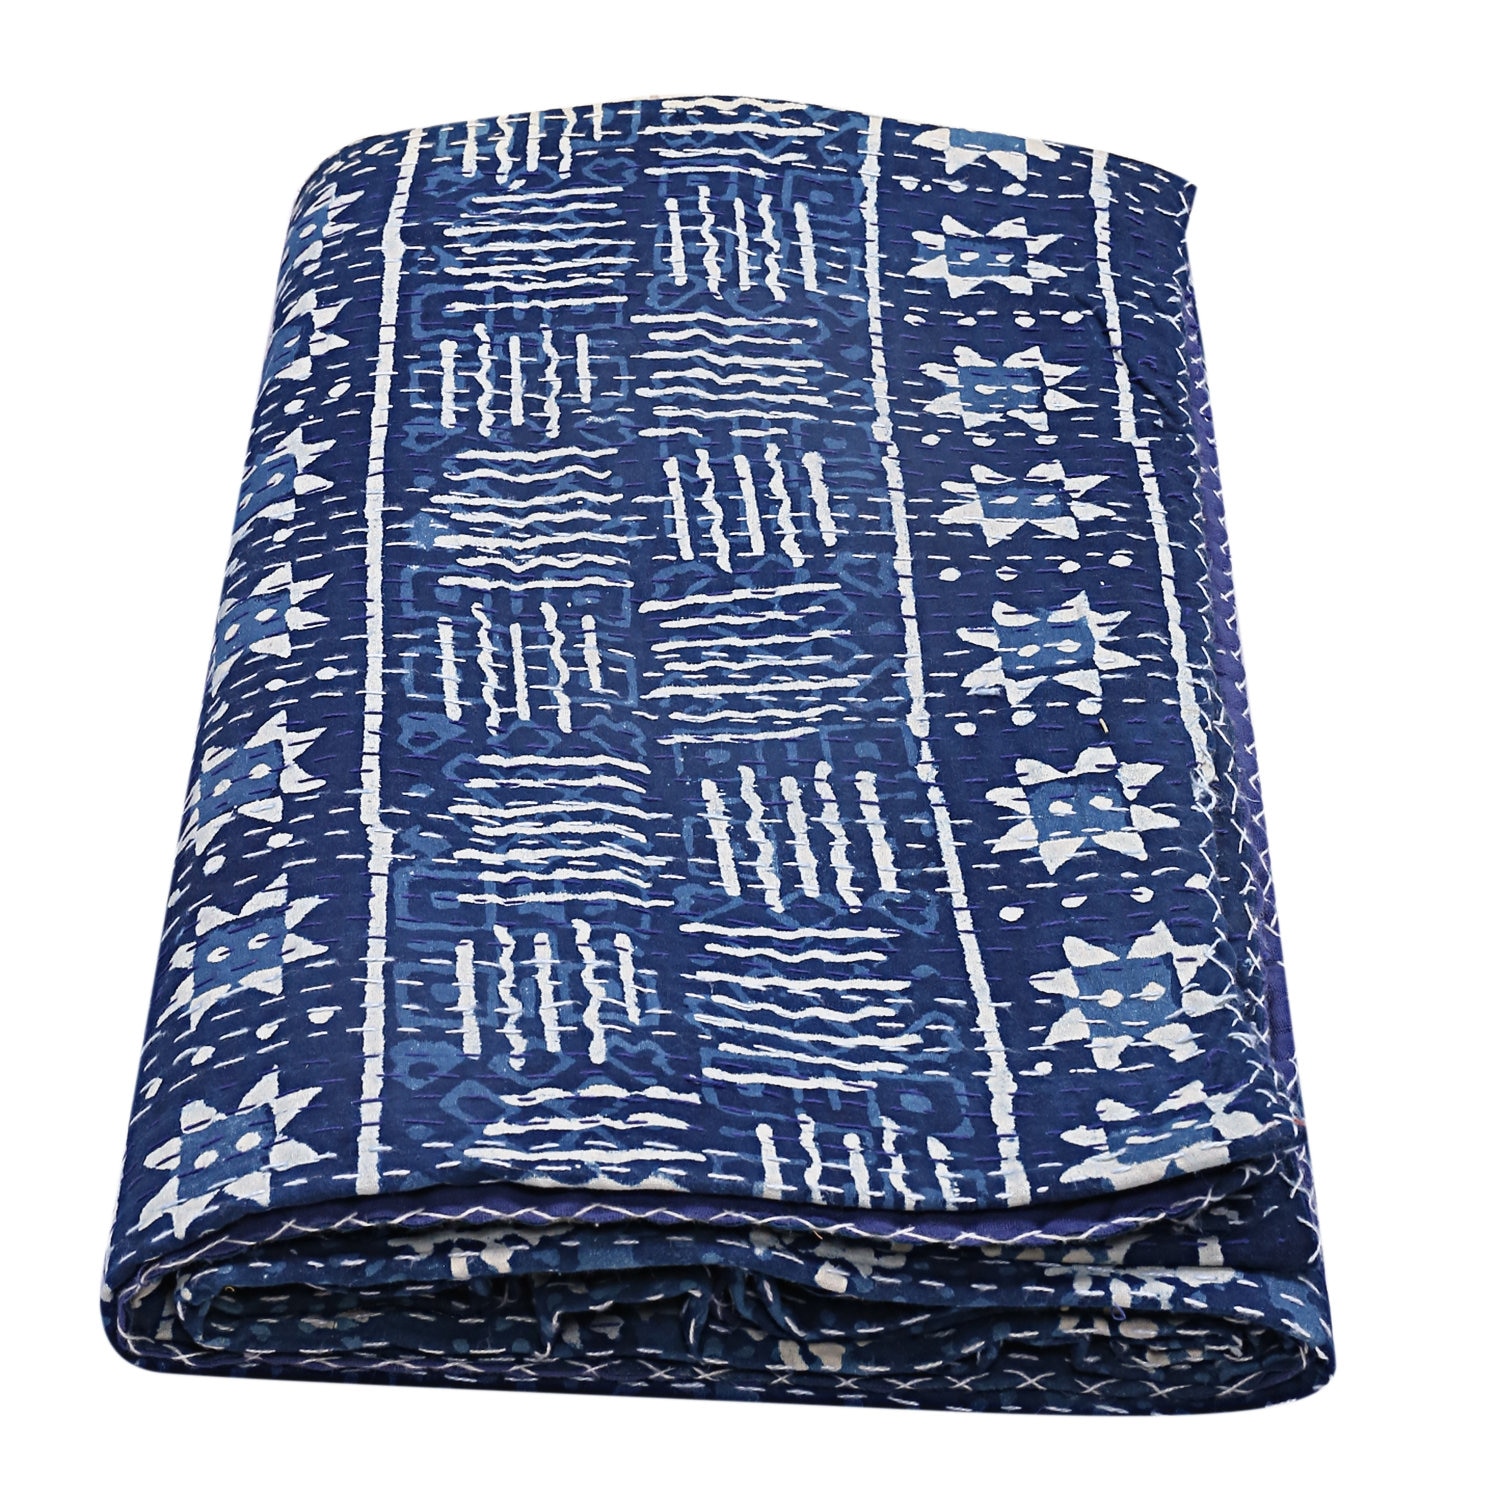 INDIGO HAND BLOCK Pattern Printed Kantha Quilt Bohemian Throw Blanket